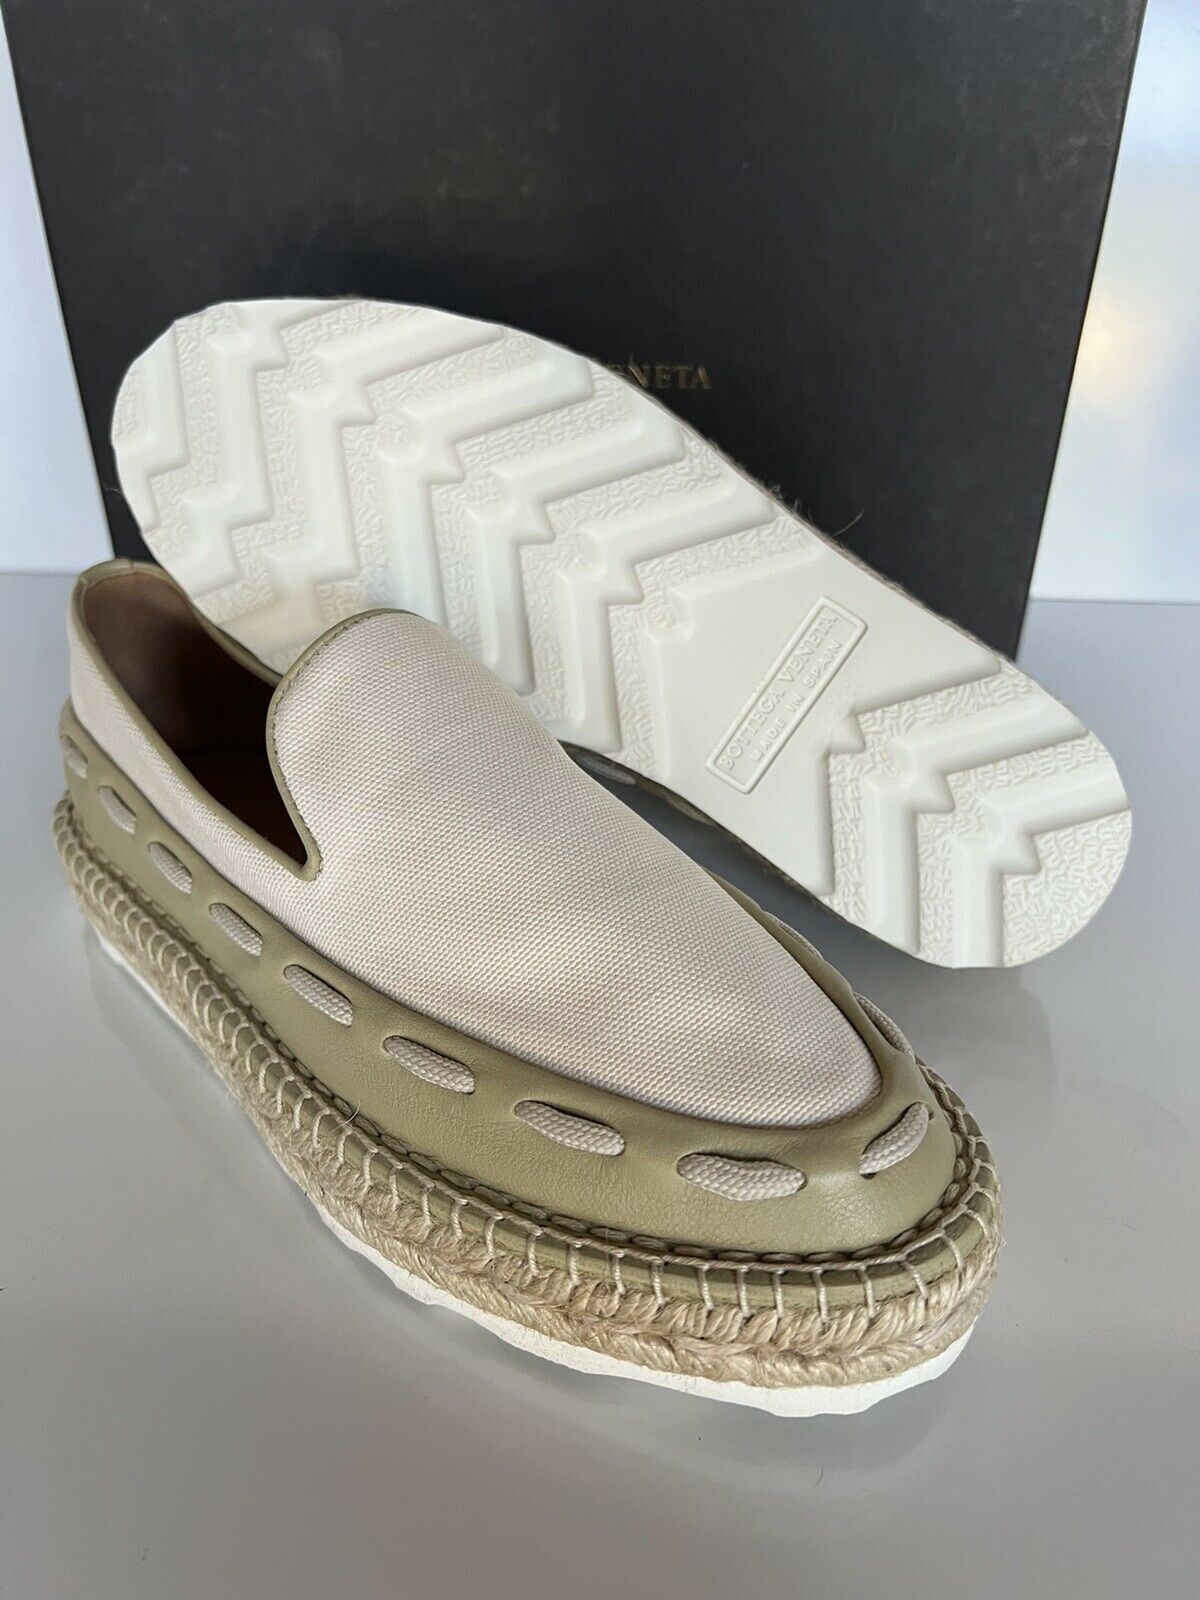 NIB 620 $ Bottega Veneta Slip-on-Espadrilles-Schuhe für Damen 9 US (39 Euro) 578386 